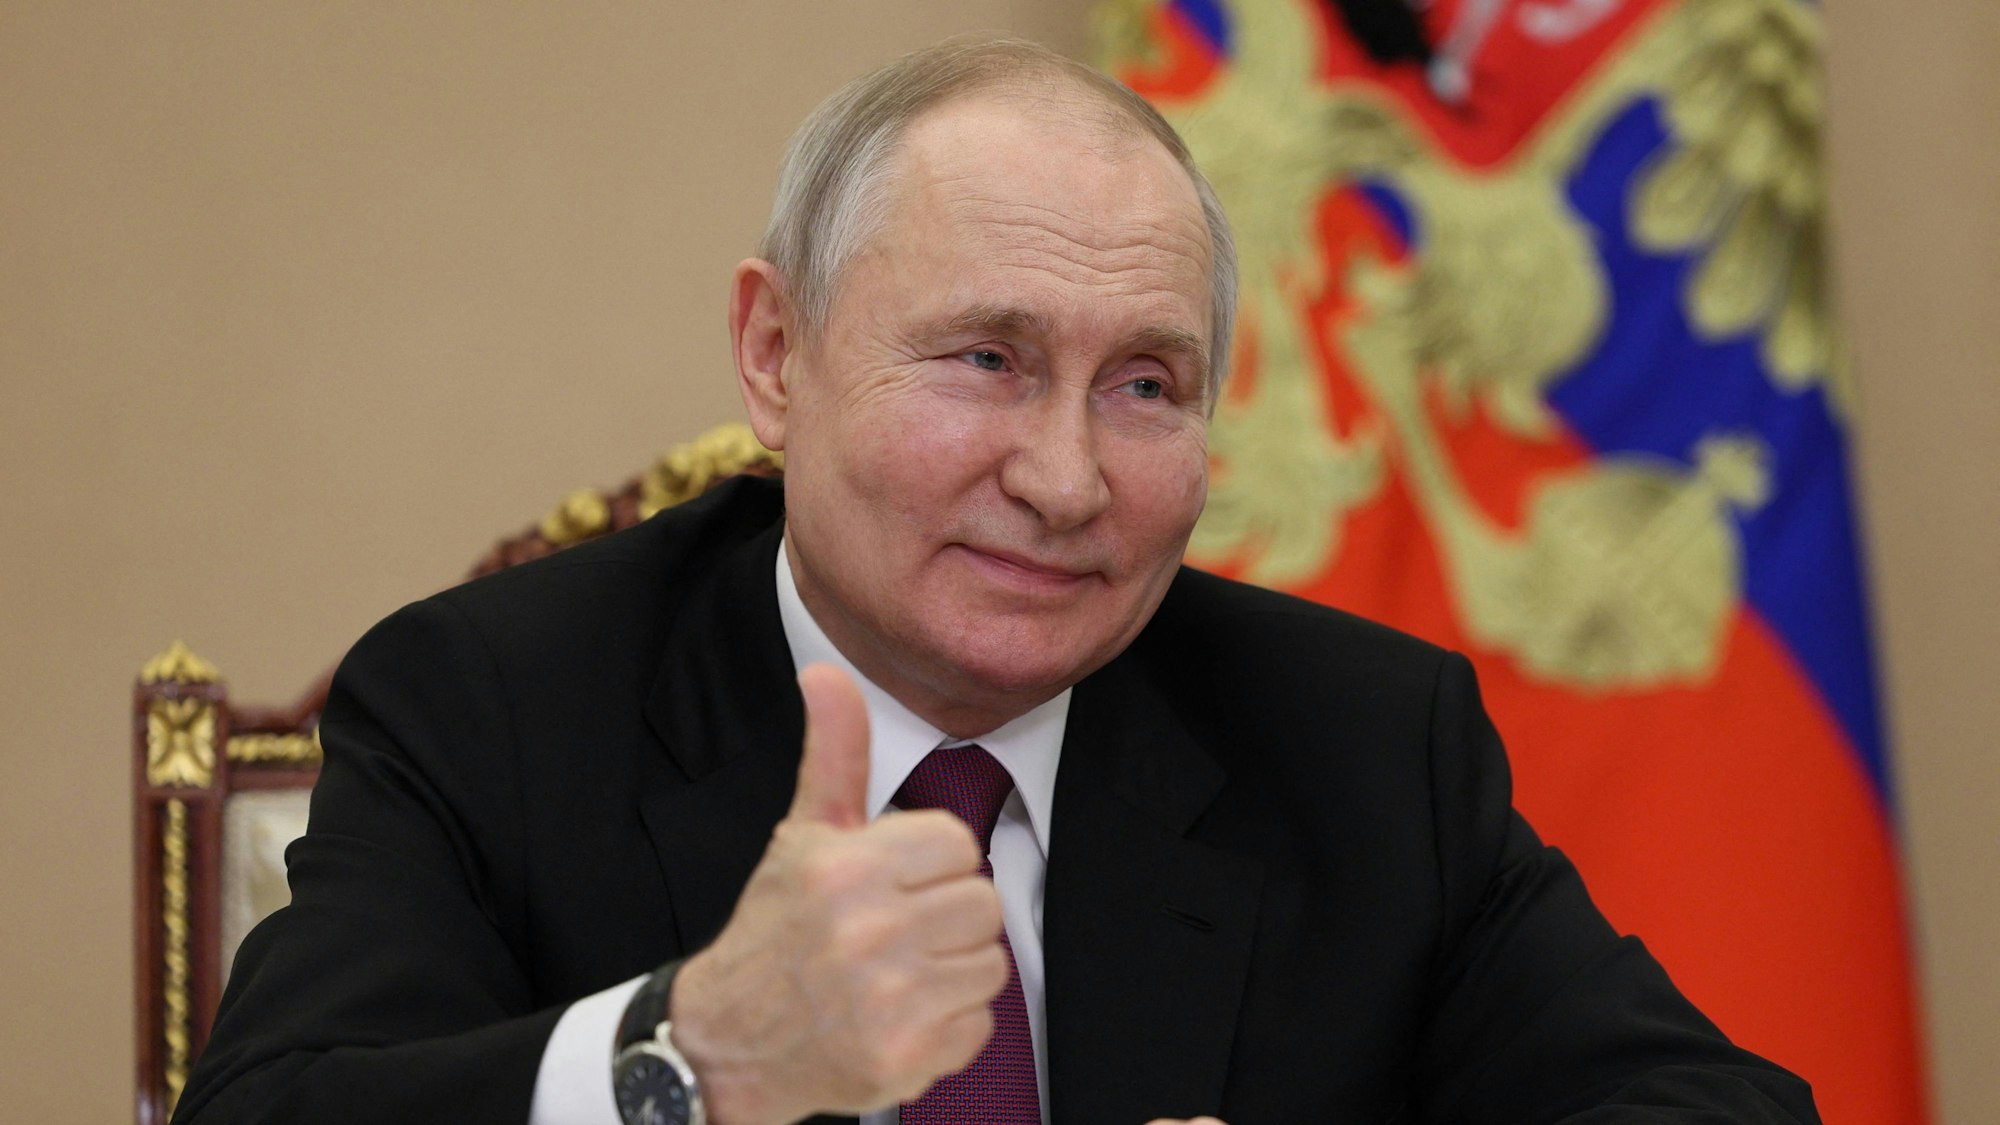 Alles unter Kontrolle, behauptet Wladimir Putin. In Russland jedoch wächst angesichts mehrerer Angriffe auf russischem Staatsgebiet die Angst.